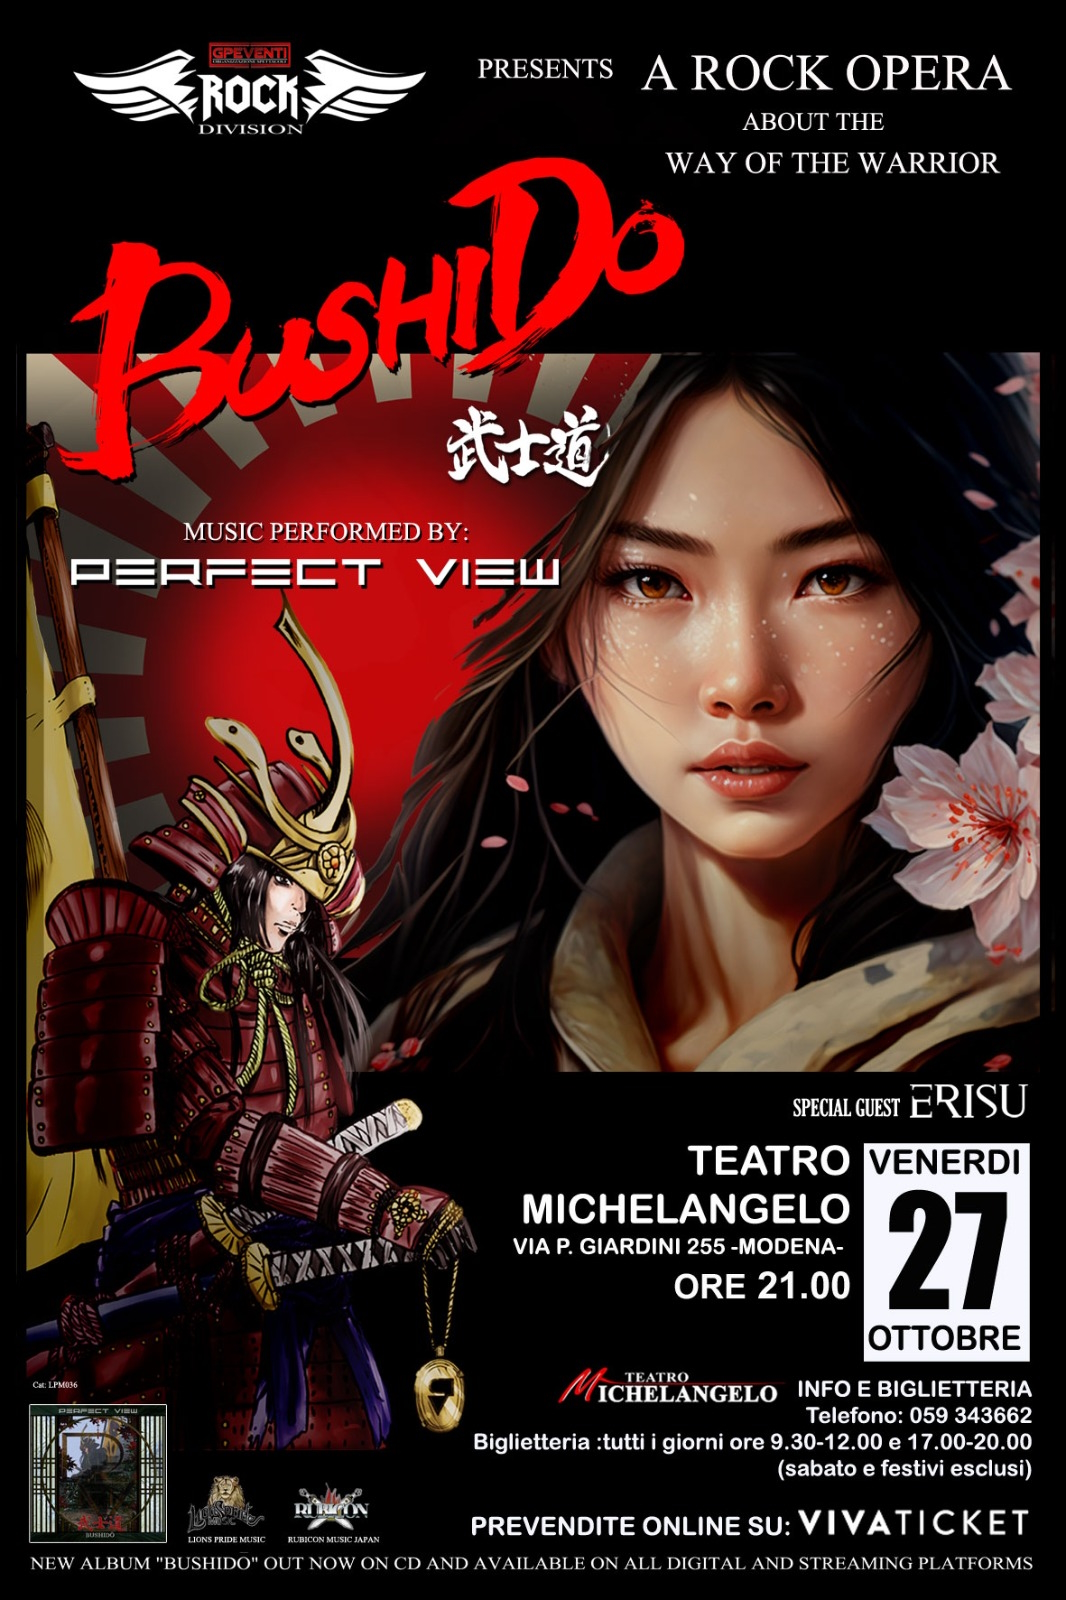 <strong> Perfect View: venerdì 27 ottobre al Teatro Michelangelo di Modena andrà in scena la rock opera teatrale “Bushido”</strong>